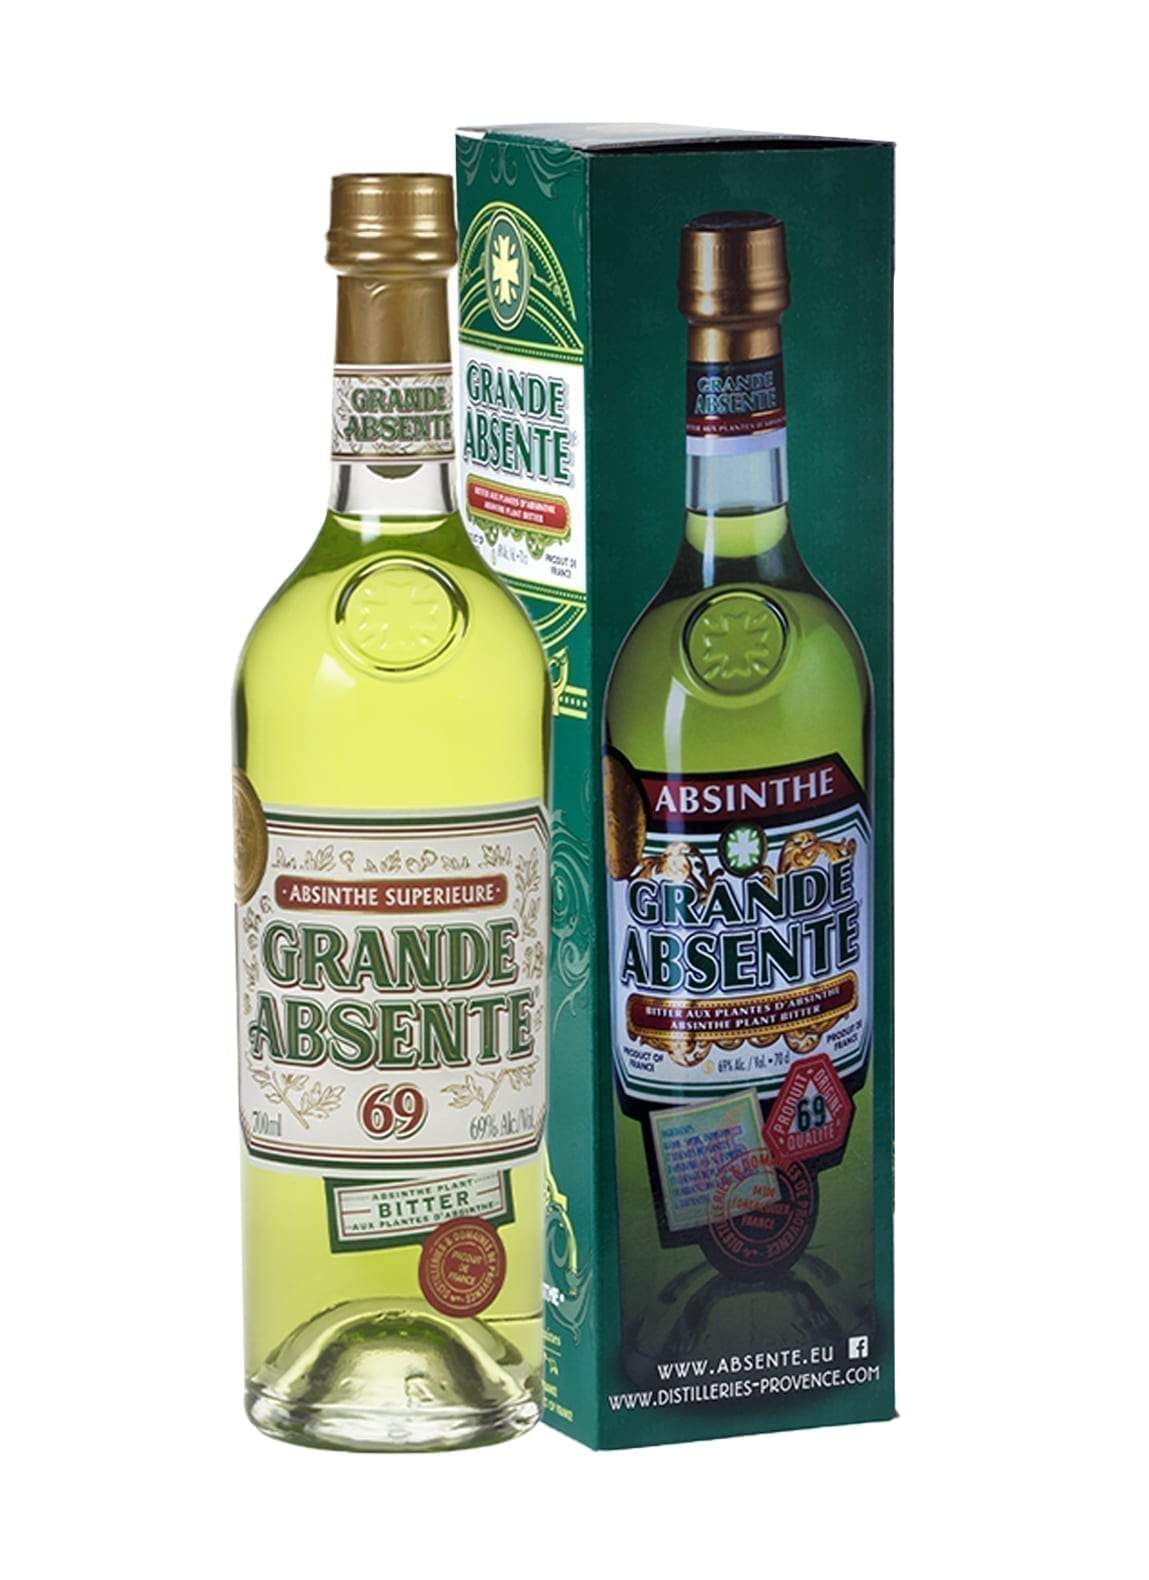 Distillerie et Domaines de Provence La Grande Absente 69% 700ml | Liqueurs | Shop online at Spirits of France